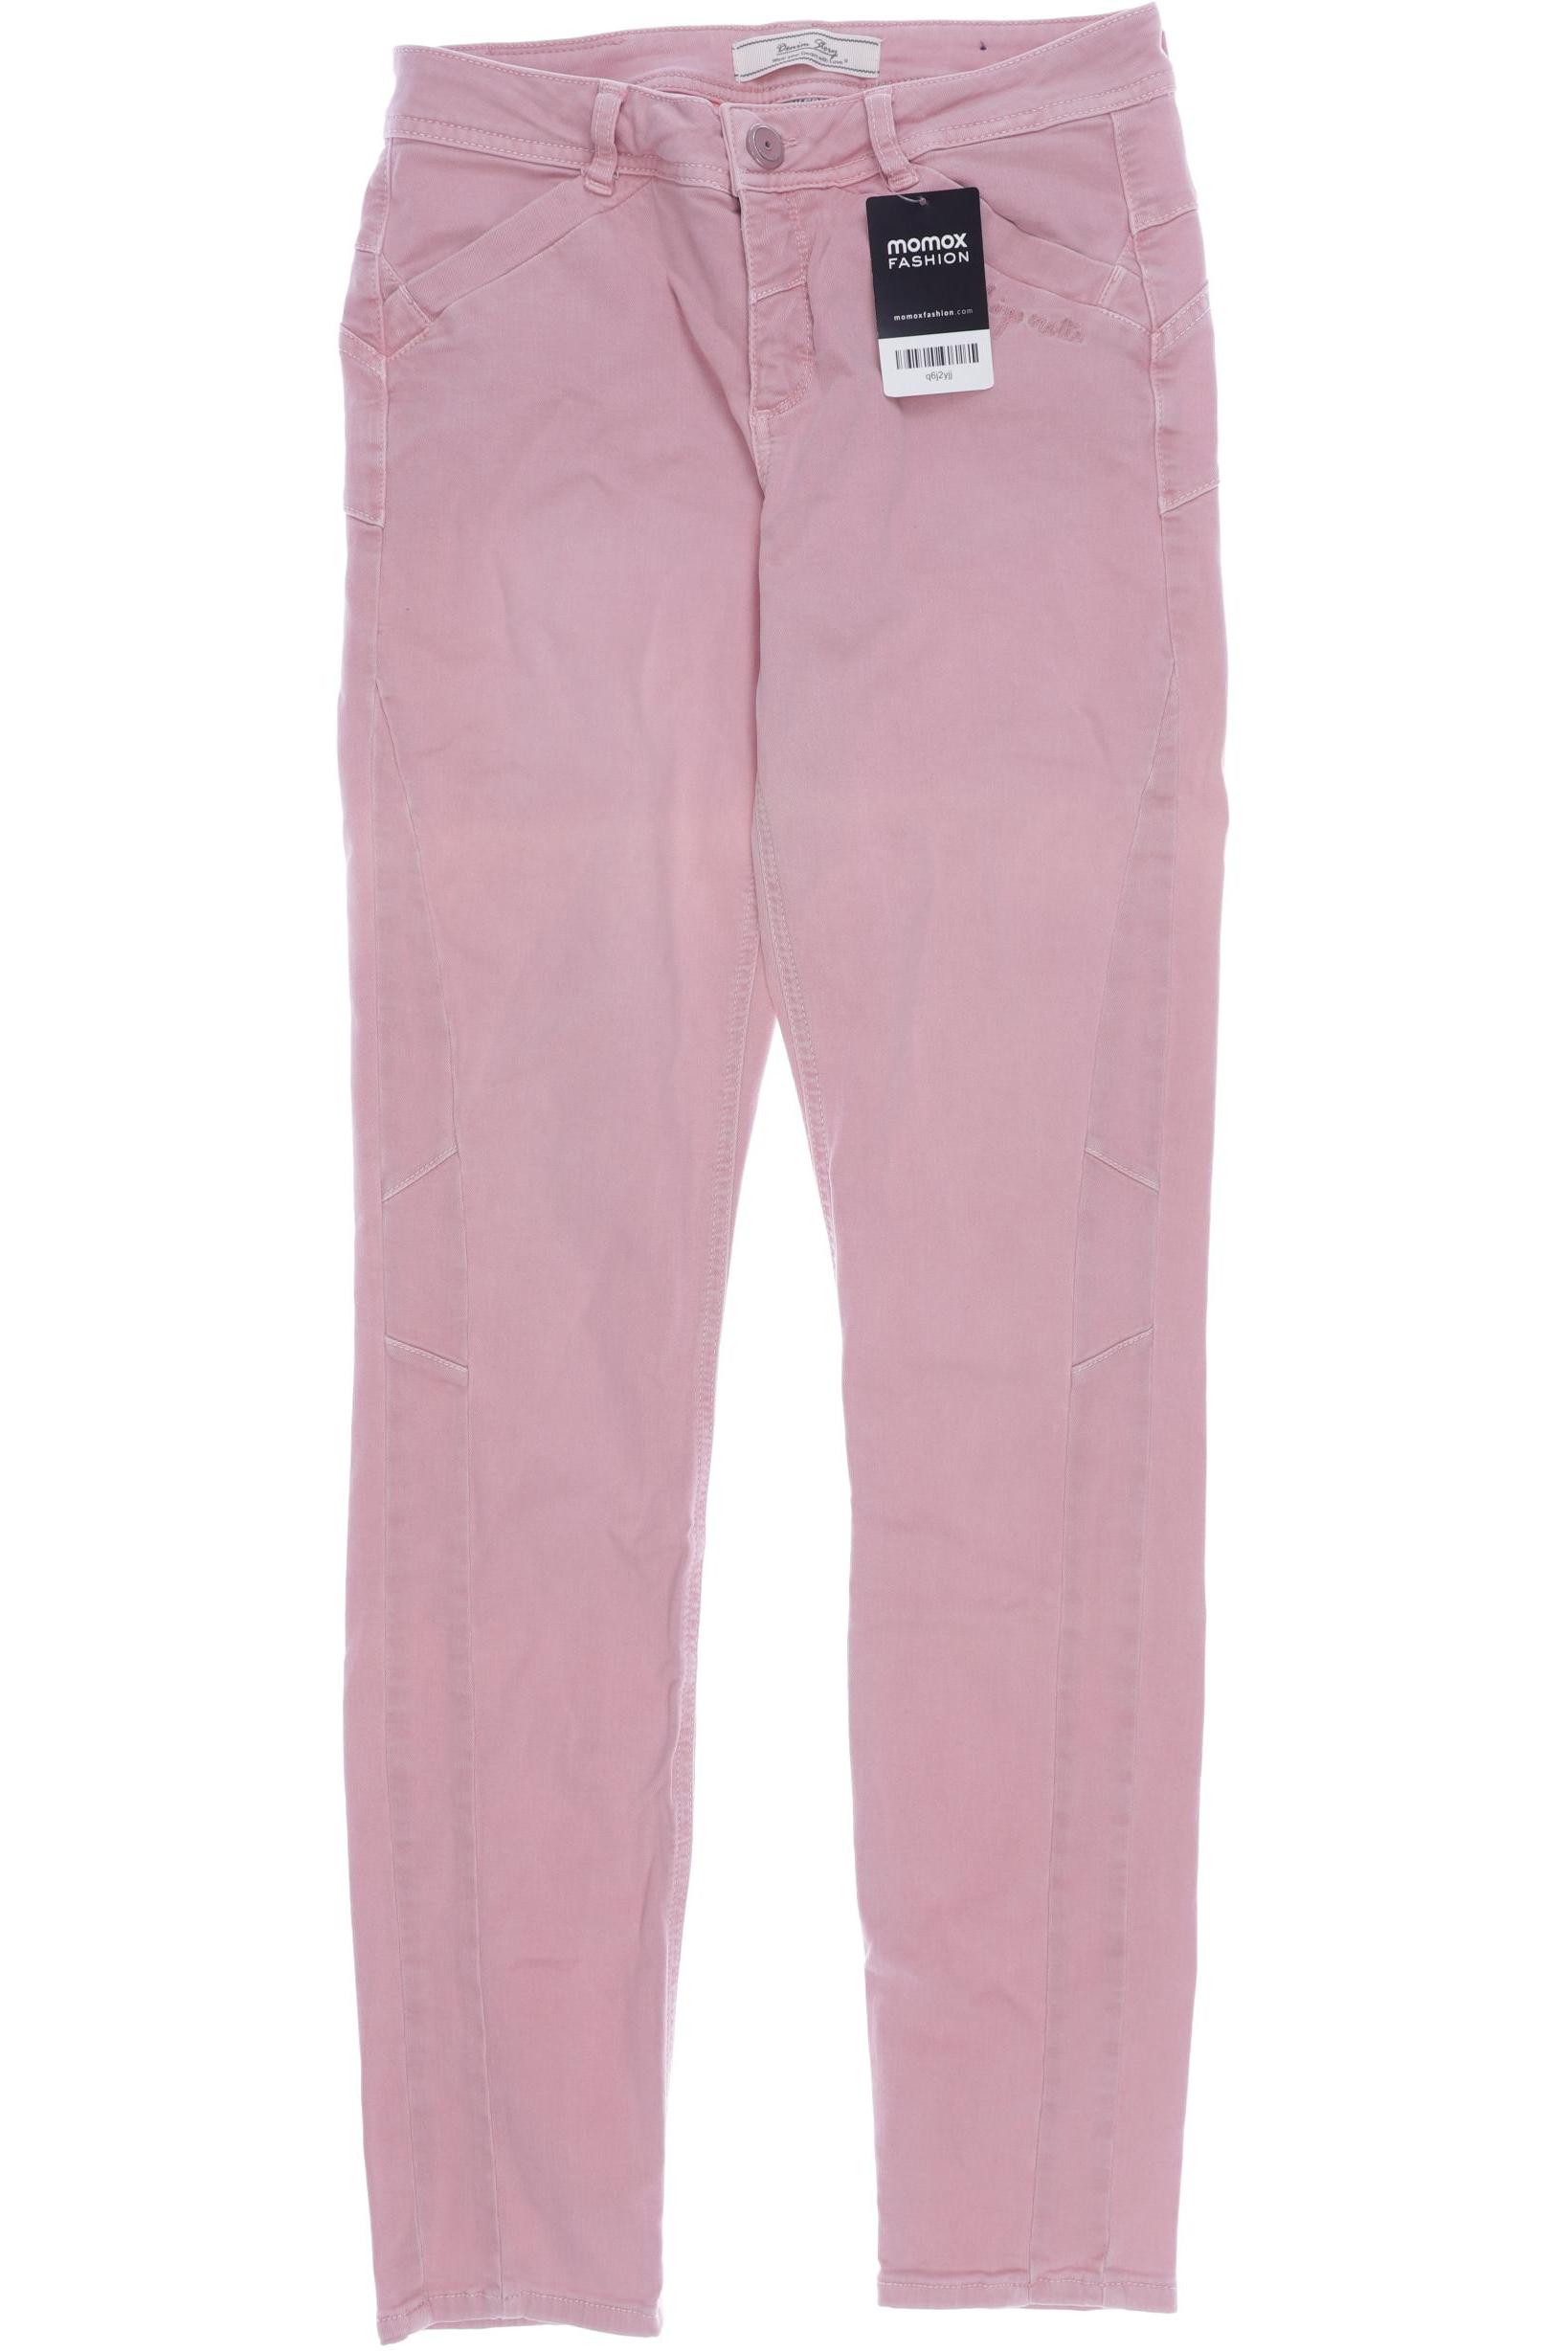 Street One Damen Jeans, pink von Street One